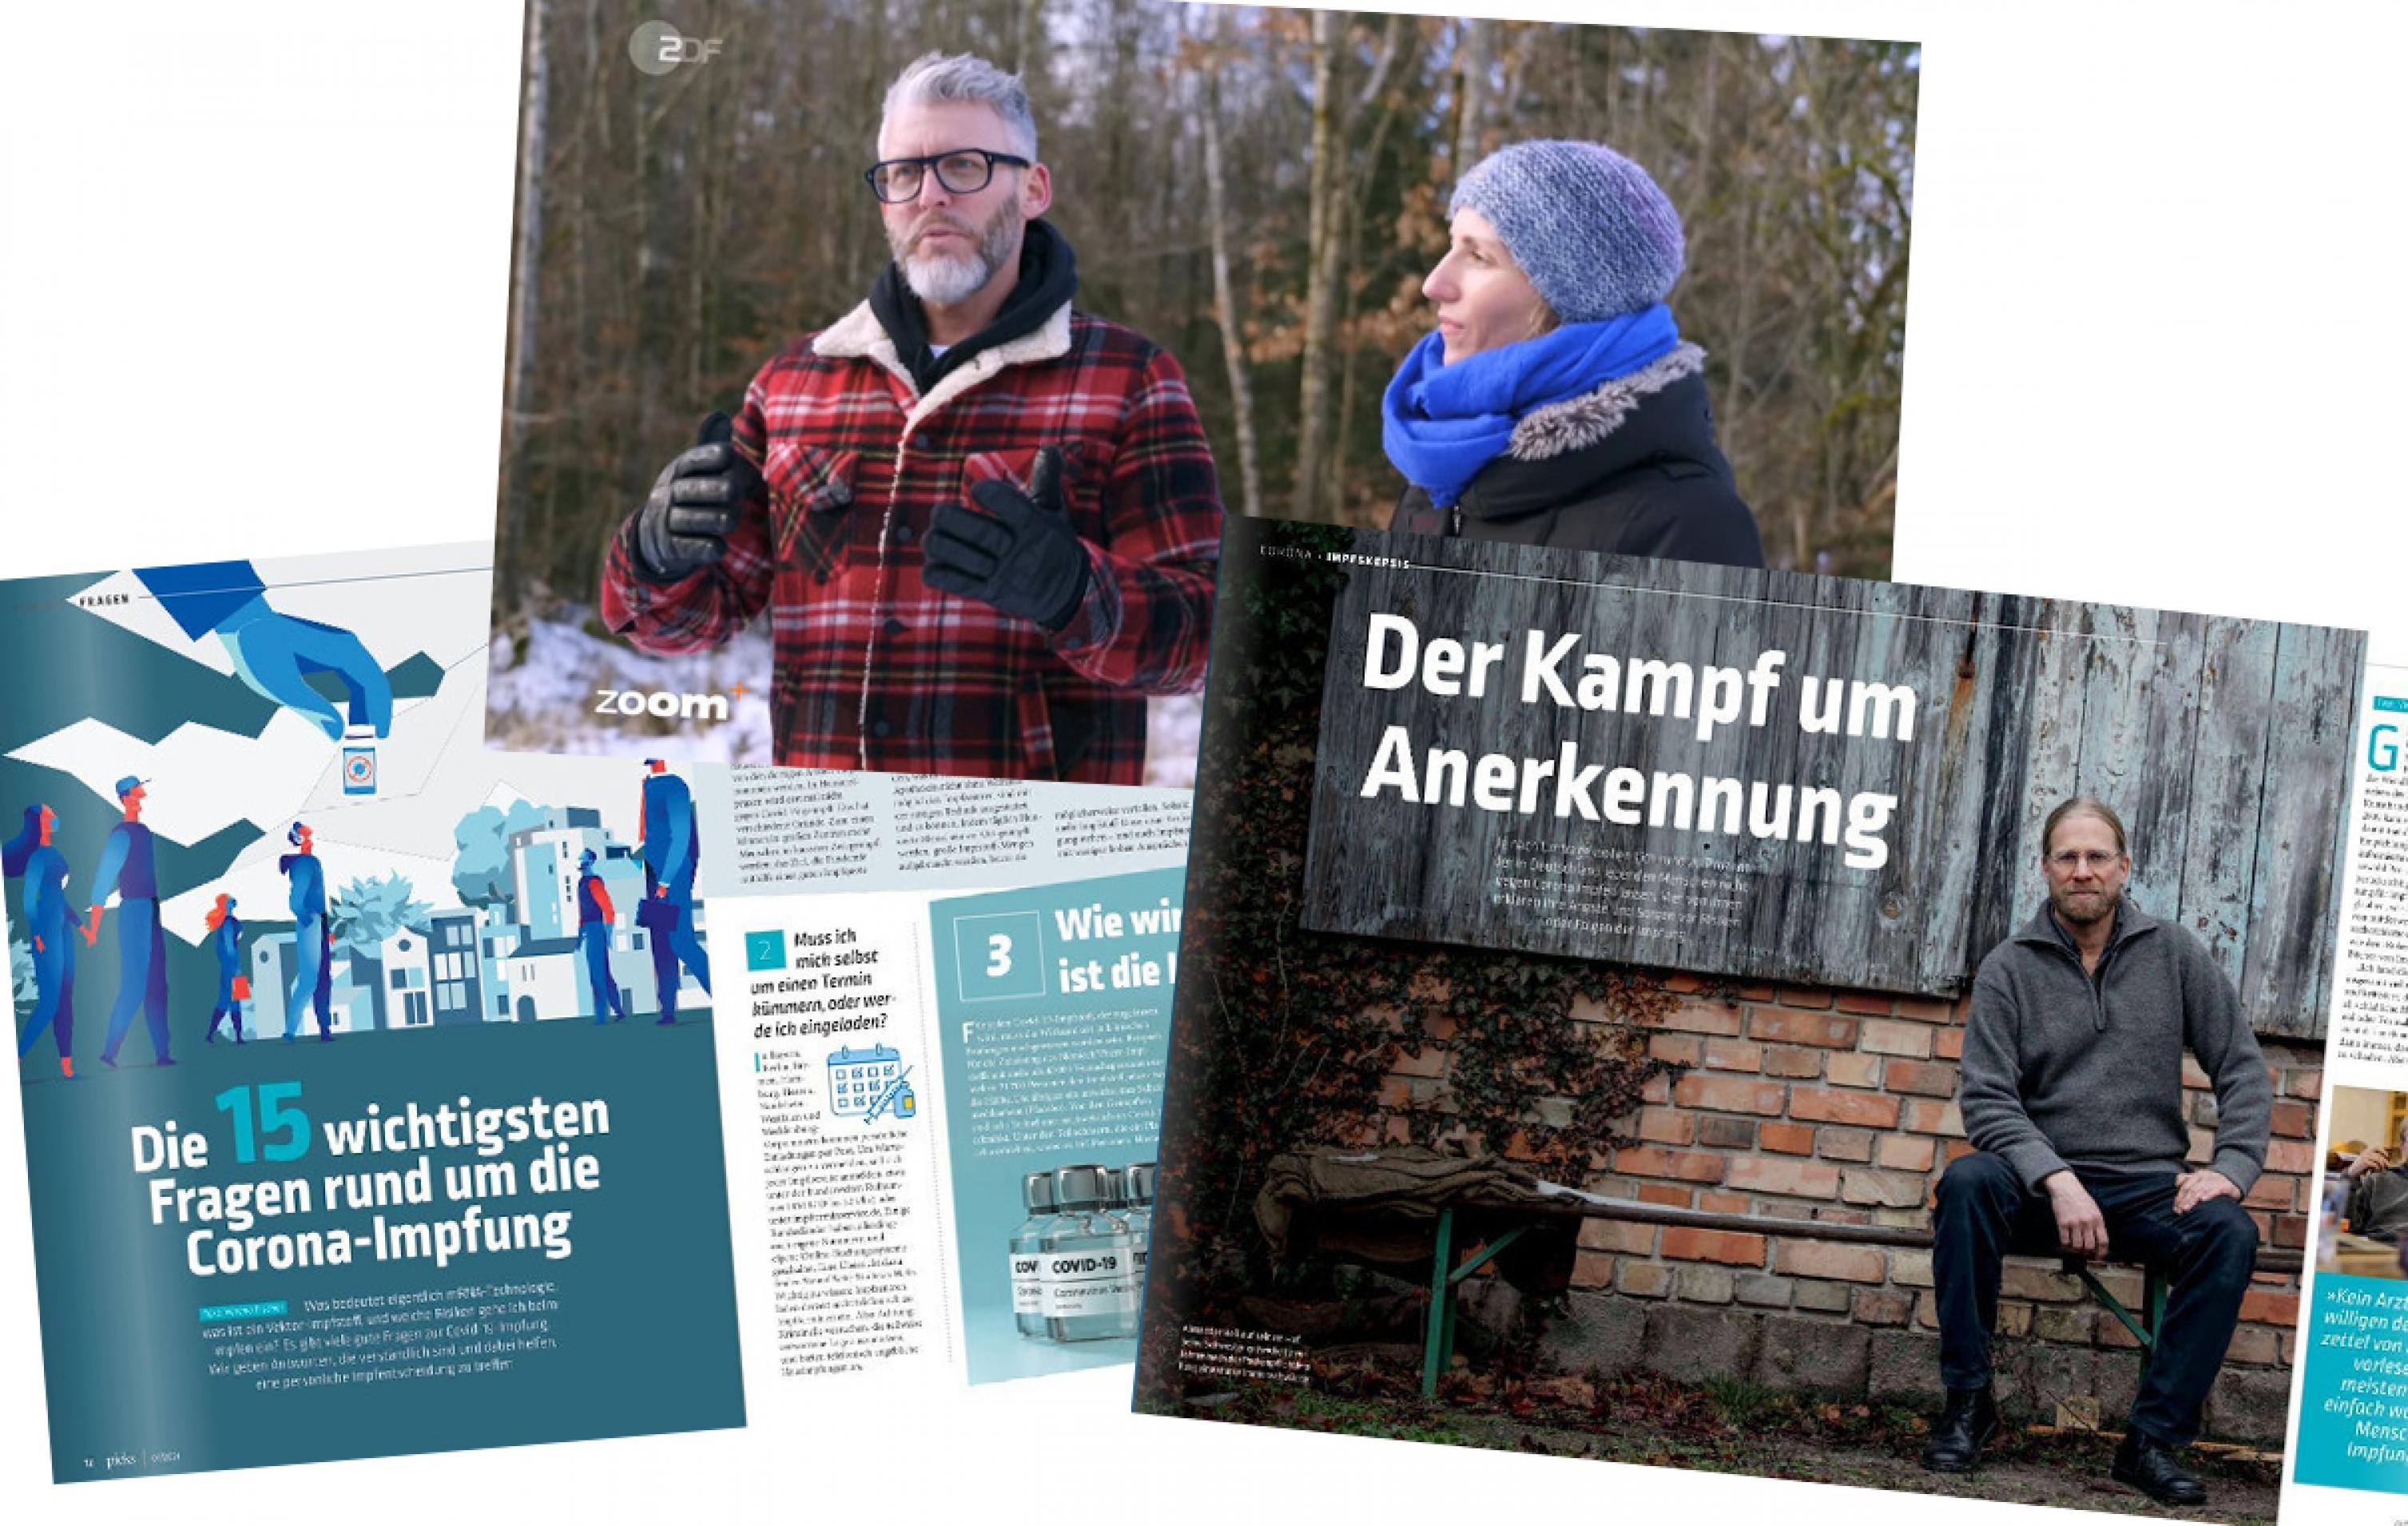 Zwei Doppelseiten aus dem Magazin „Pieks“ und ein Bild aus der Dokumentation: ein Mann mit grauem Vollbart und Brille in Holzfällerjacke und eine Frau mit blauer Mütze und blauem Schal.